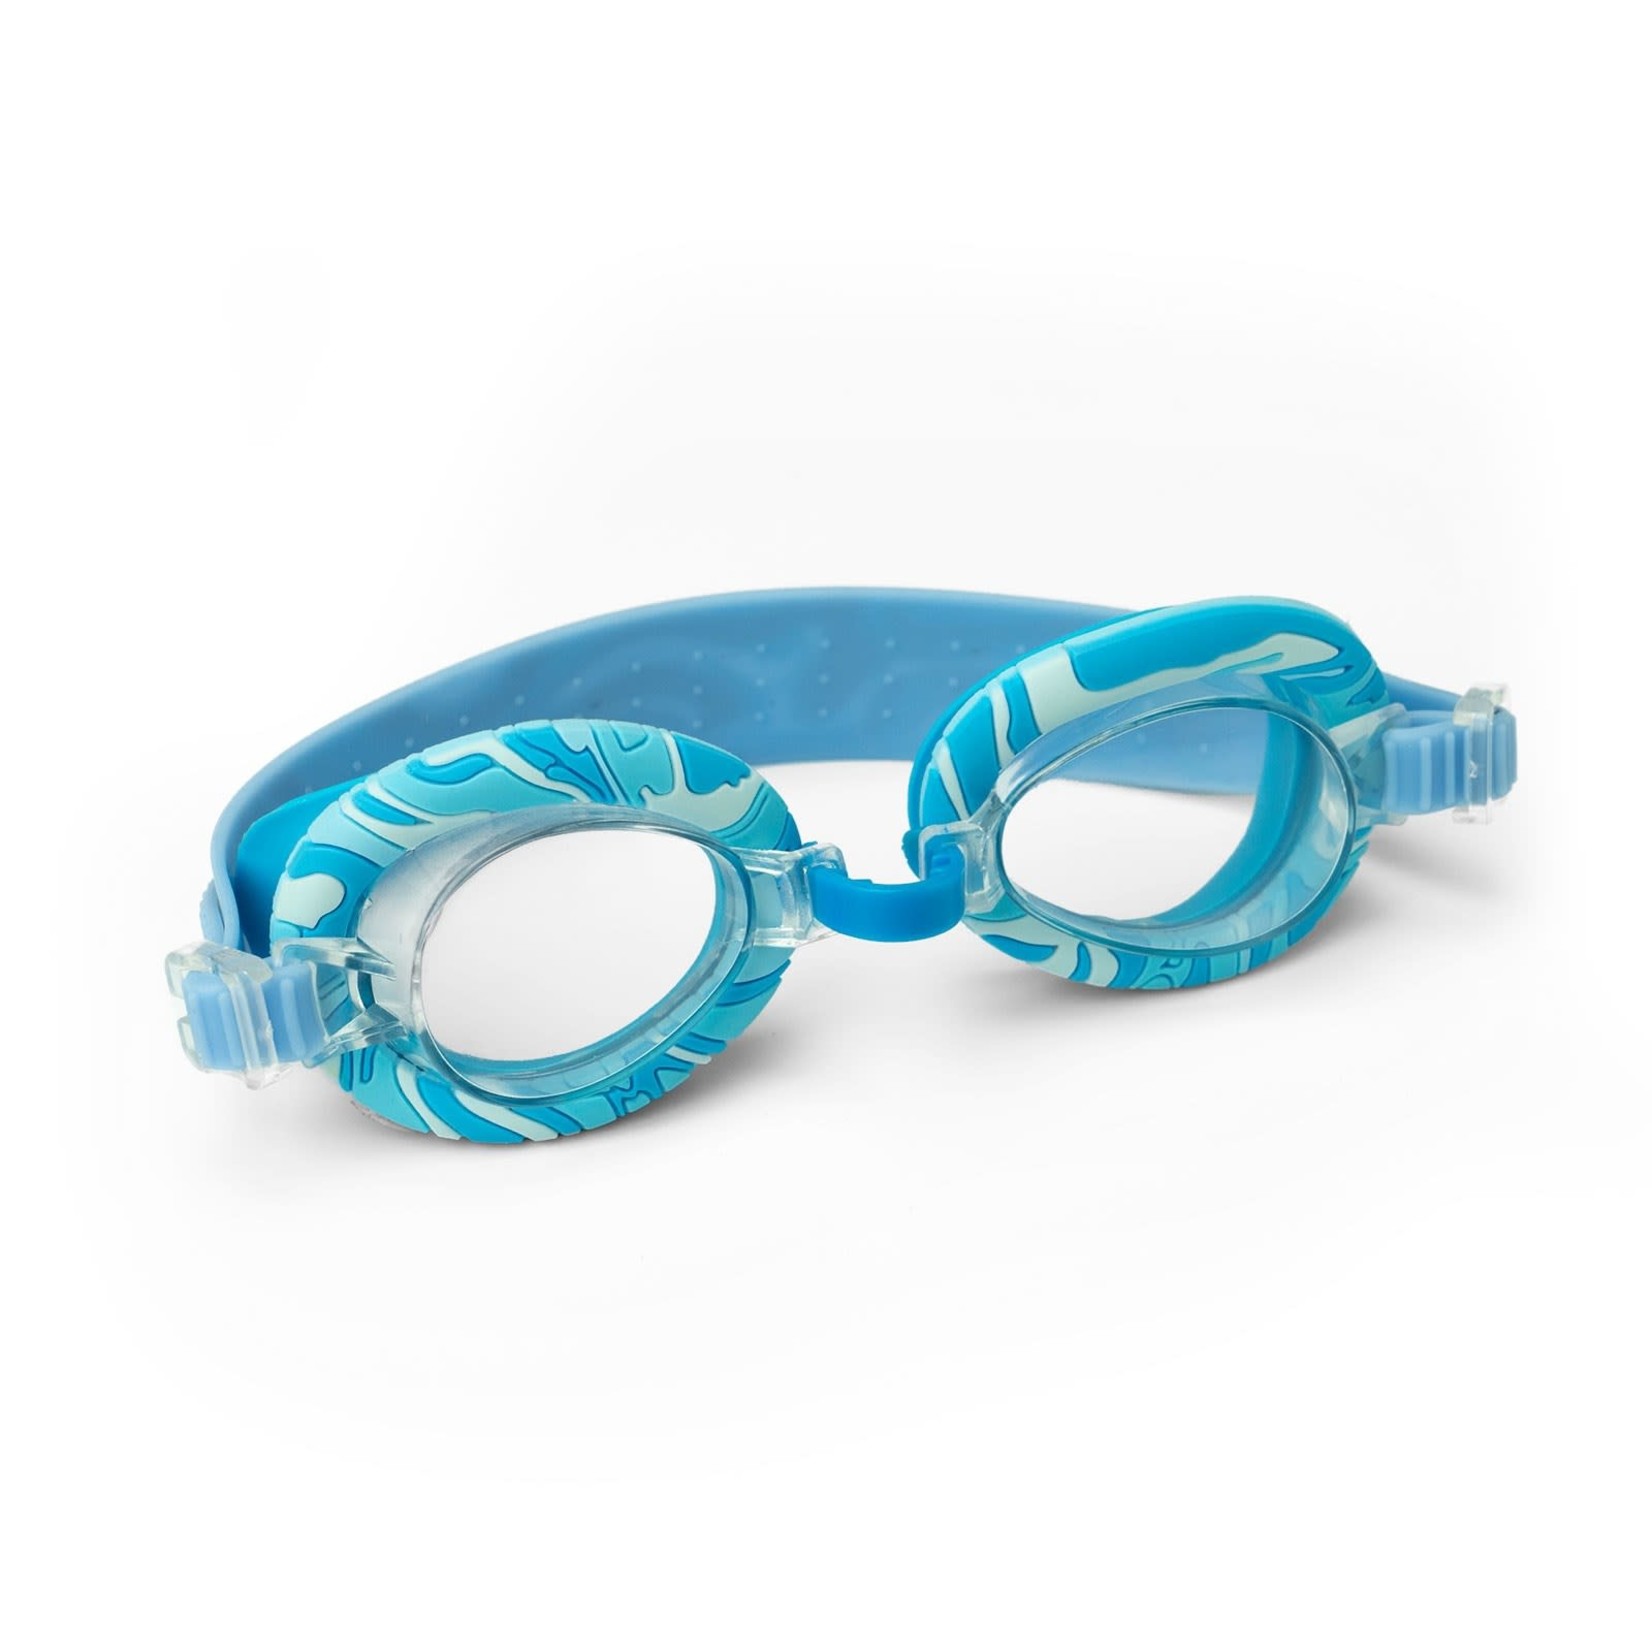 Juice Box Juice Box Swim Goggles with Travel Case